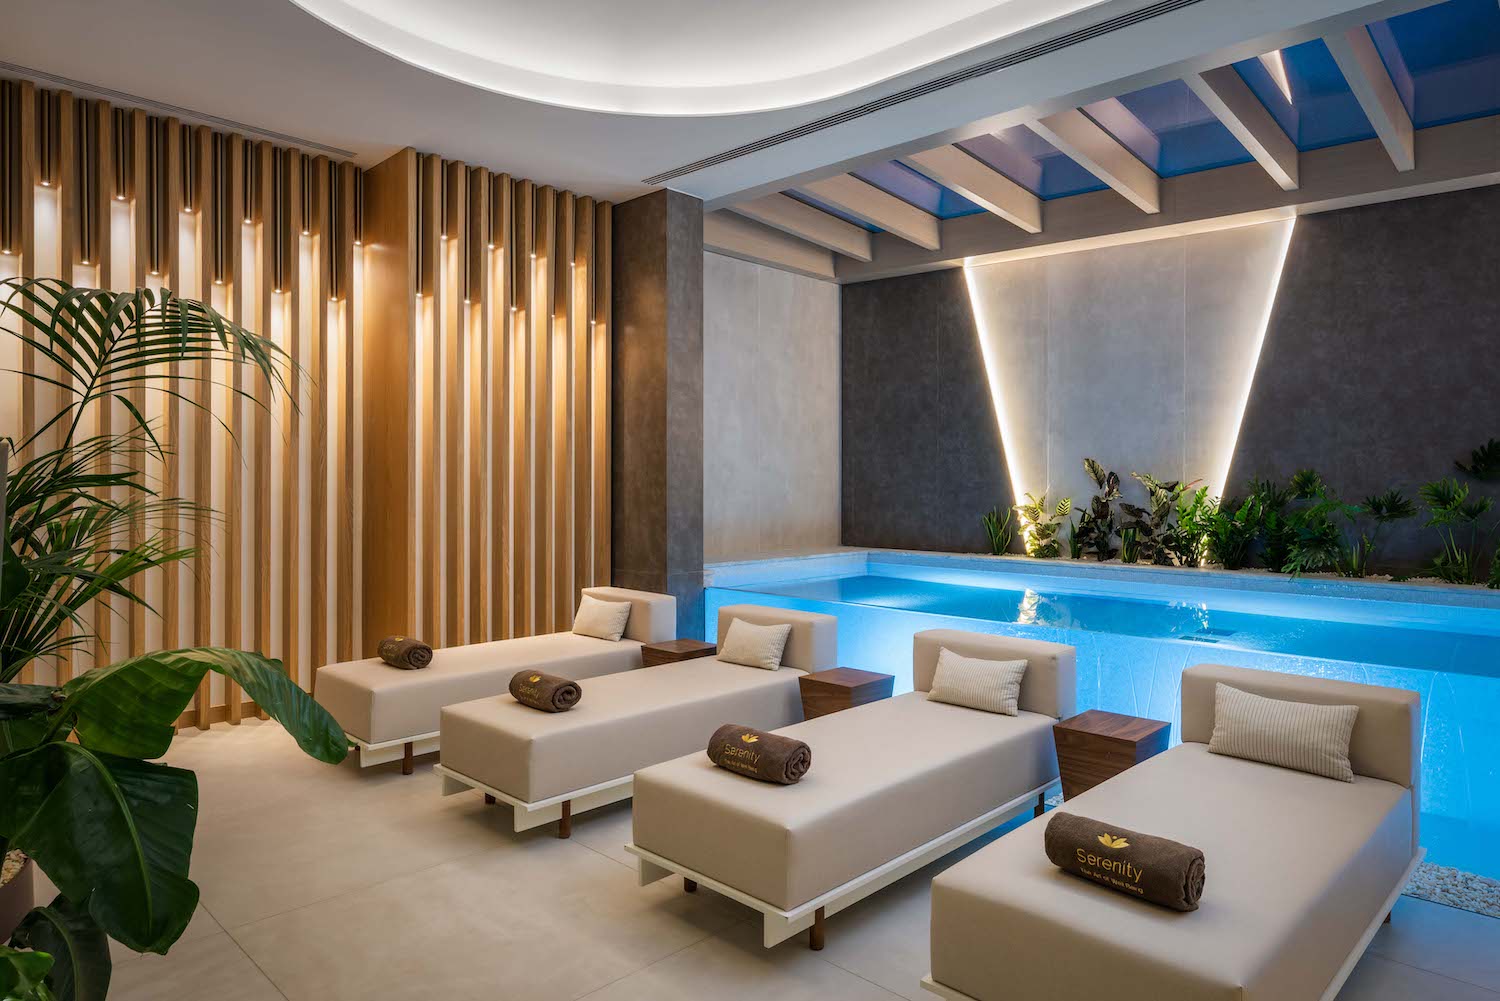 Indoor Pool at serenity spa hyatt regency lisbon